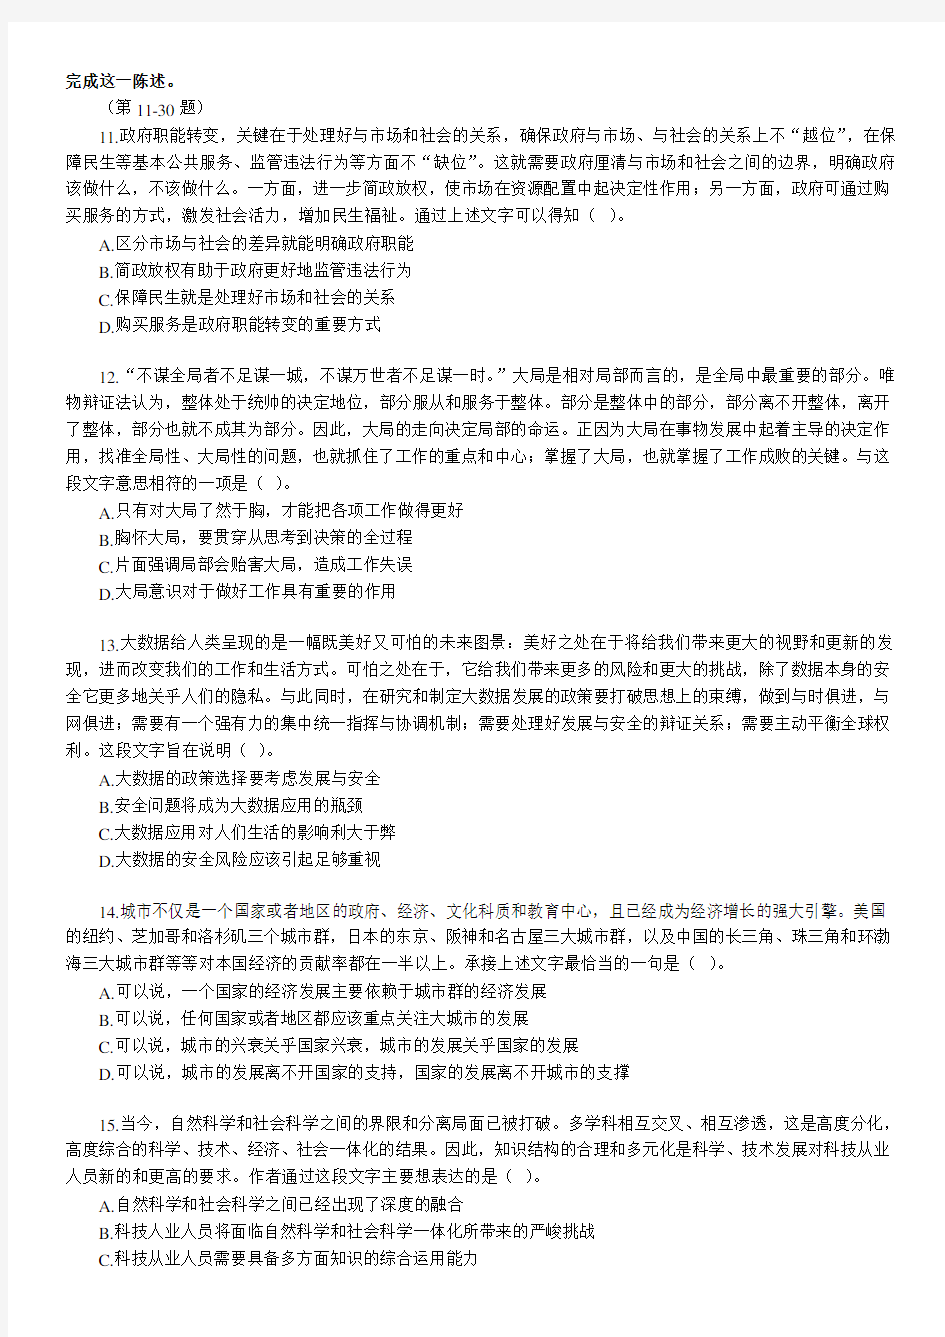 广东省公务员考试行测真题 文字版